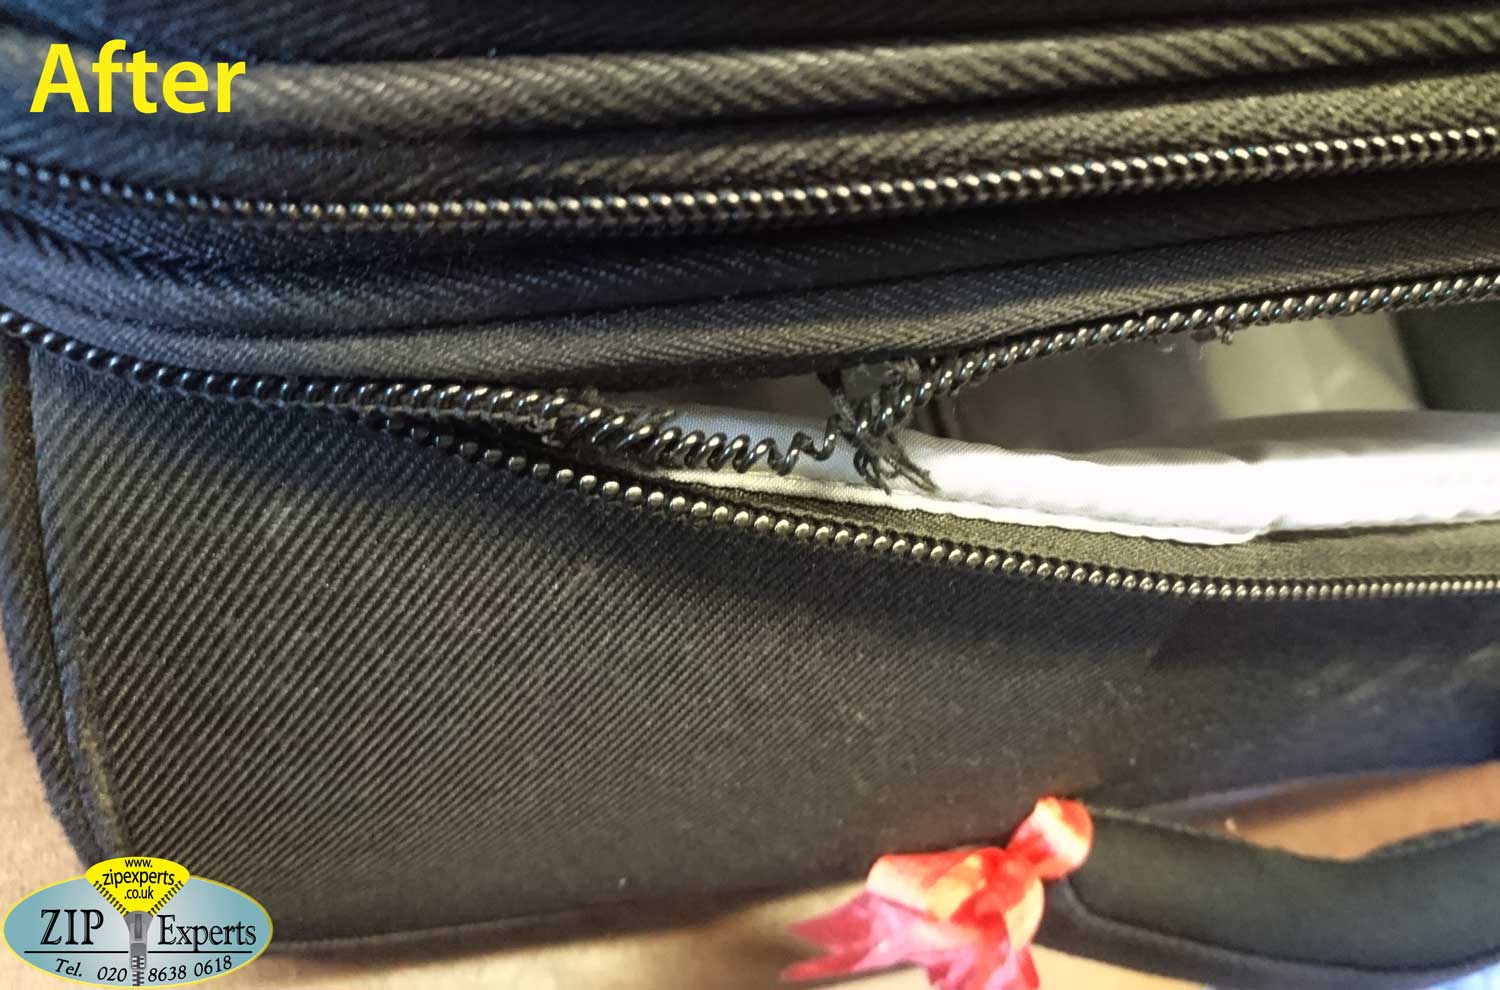 DIPLOMAT suitcase main zip repair Zip Experts